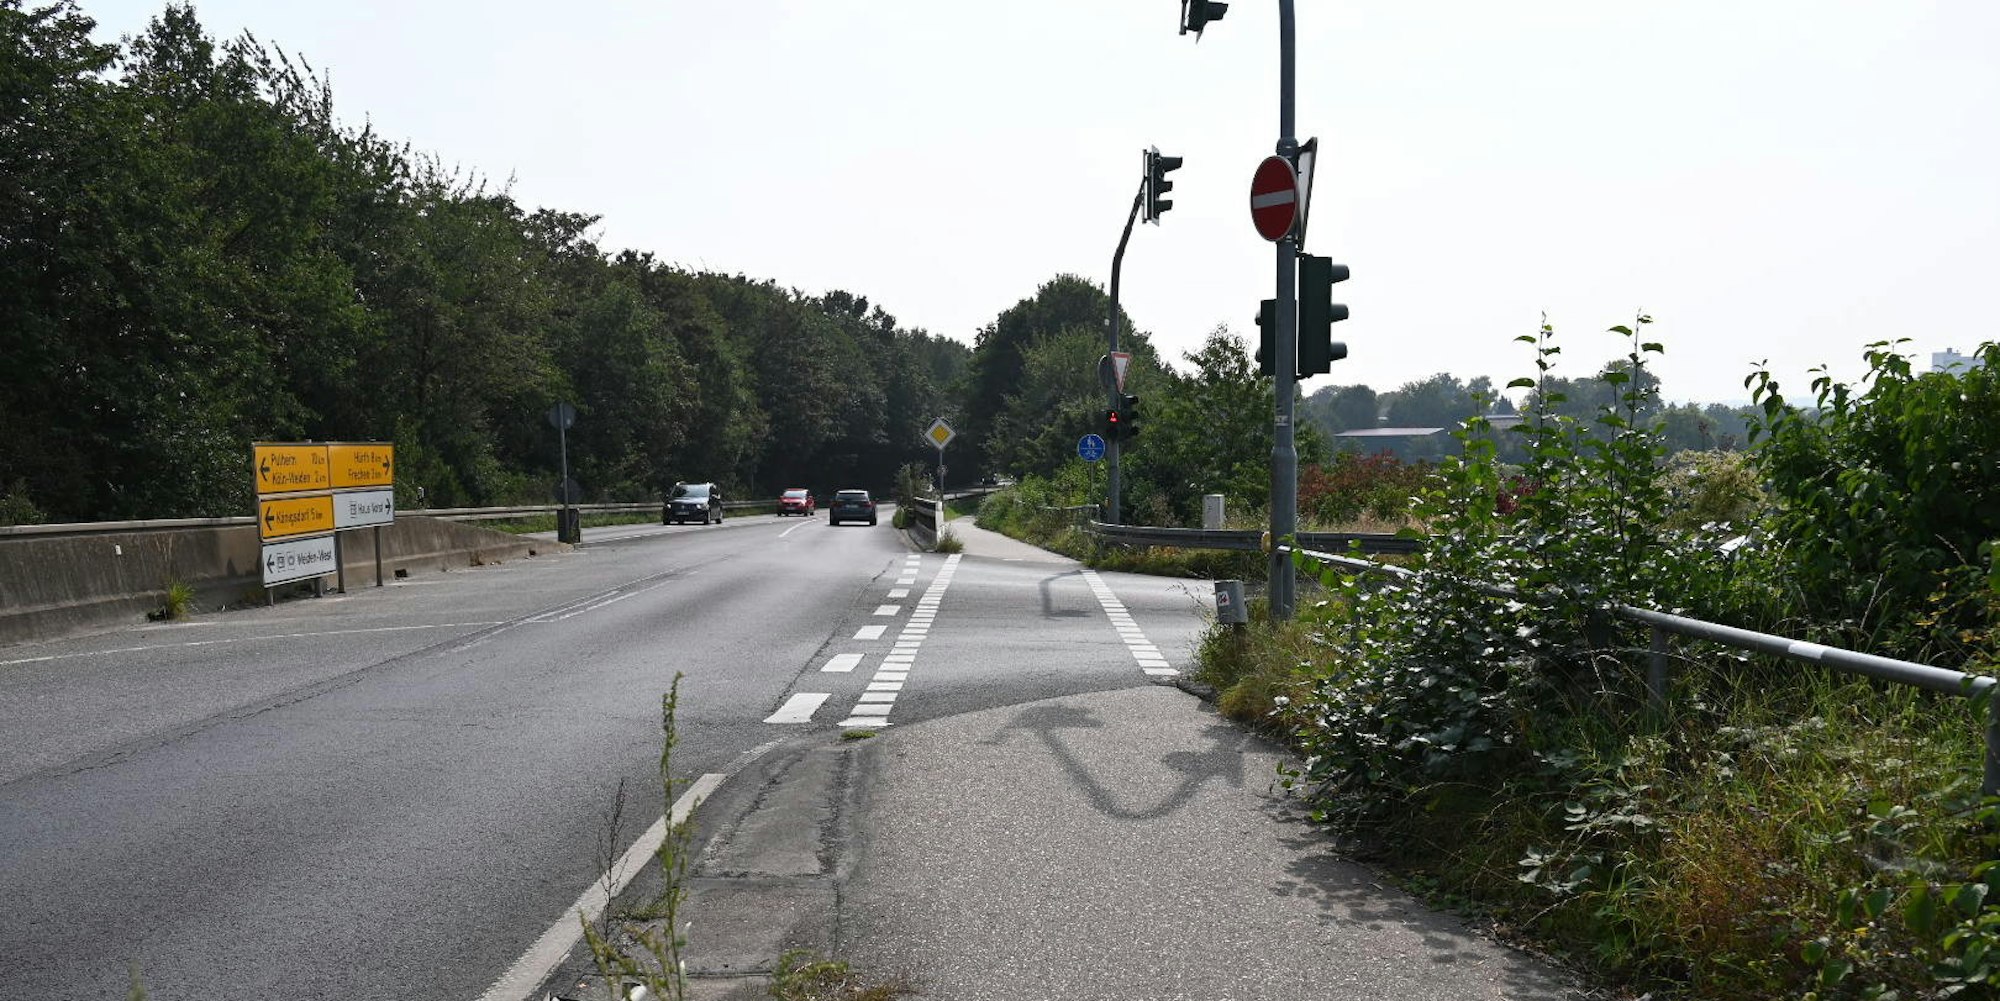 Der Umbau der Anschlussstelle Frechen-Nord verzögert sich um Jahre.